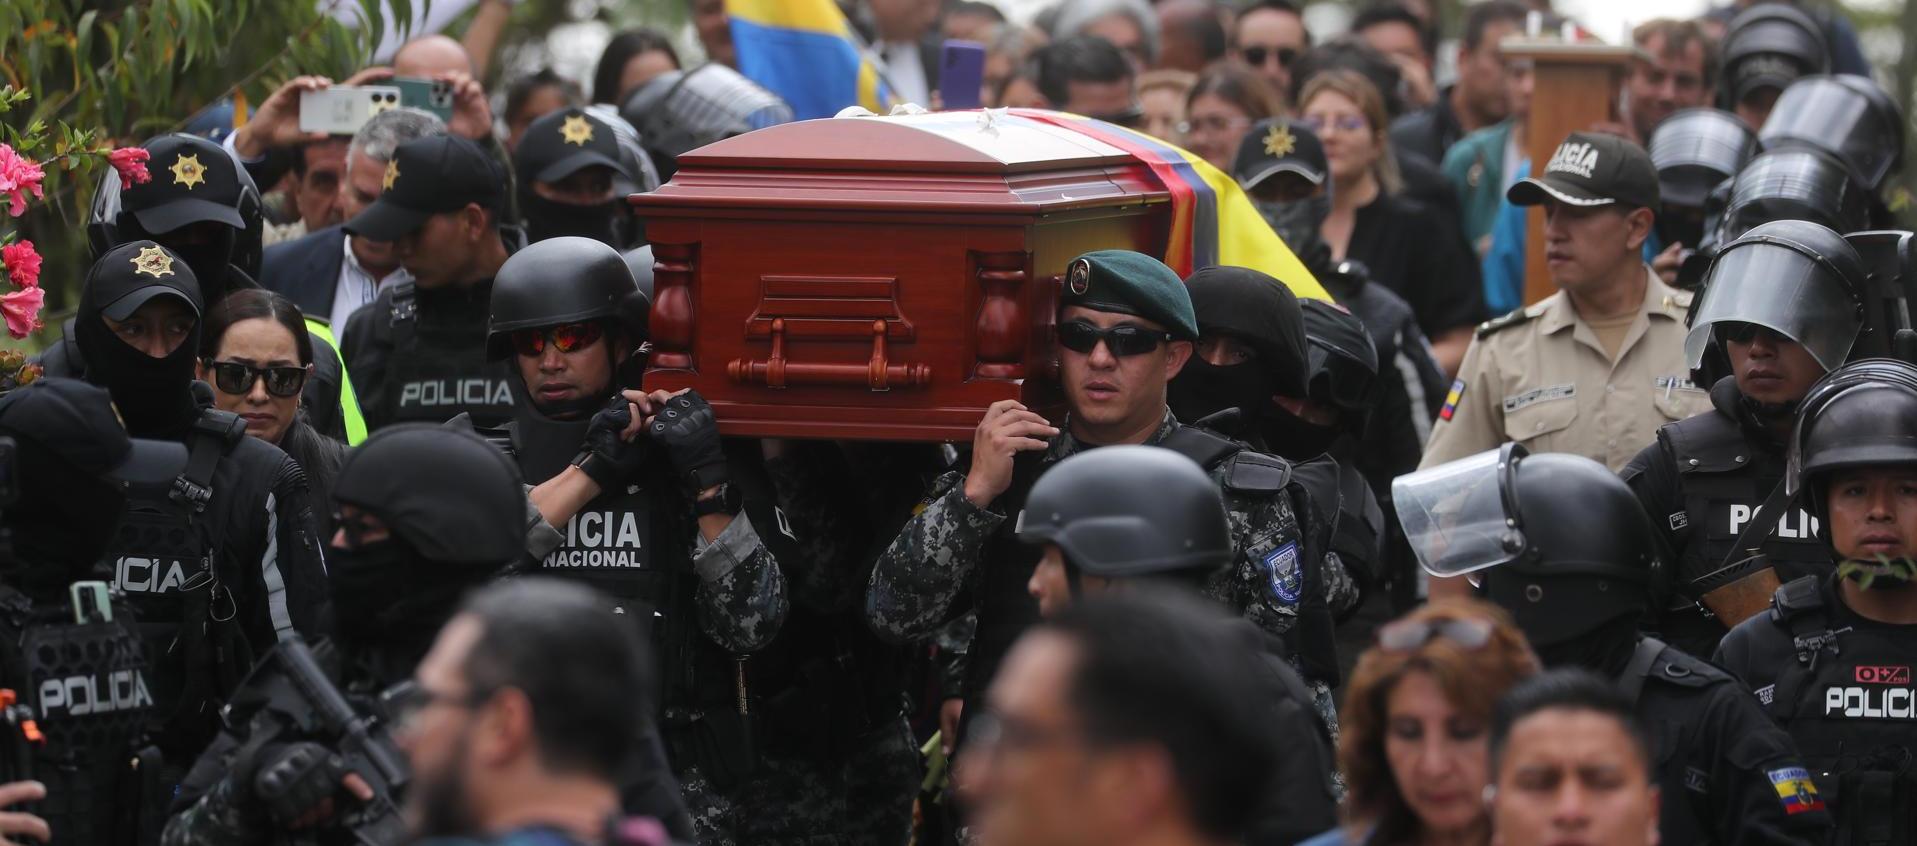 Miembros de la Policía cargan el féretro del candidato presidencial Fernando Villavicencio rumbo a su sepelio en Quito